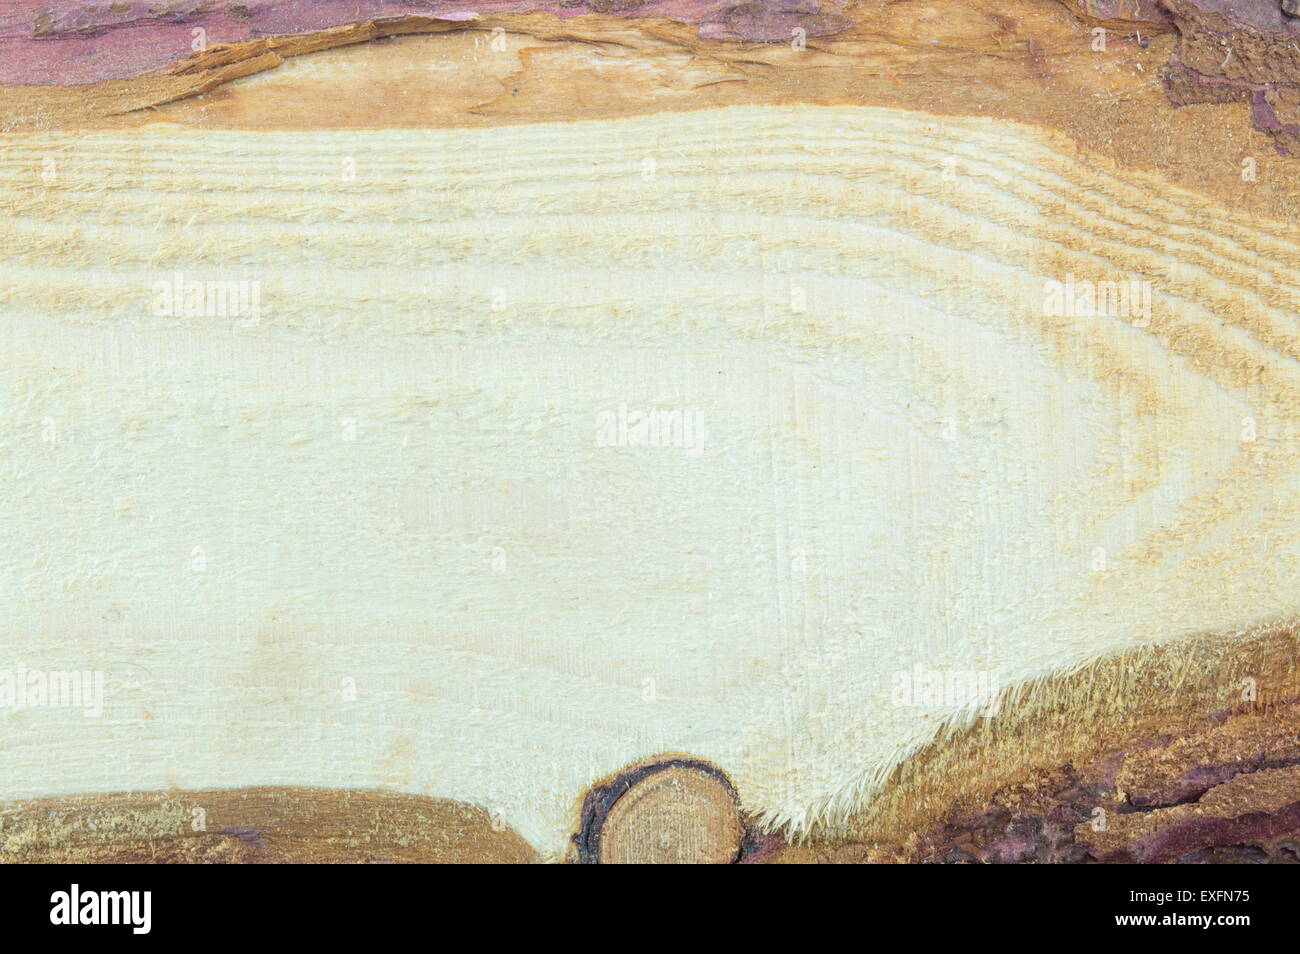 Natürliche Roh- und unverarbeitete Holzbrett Hintergrund Stockfoto